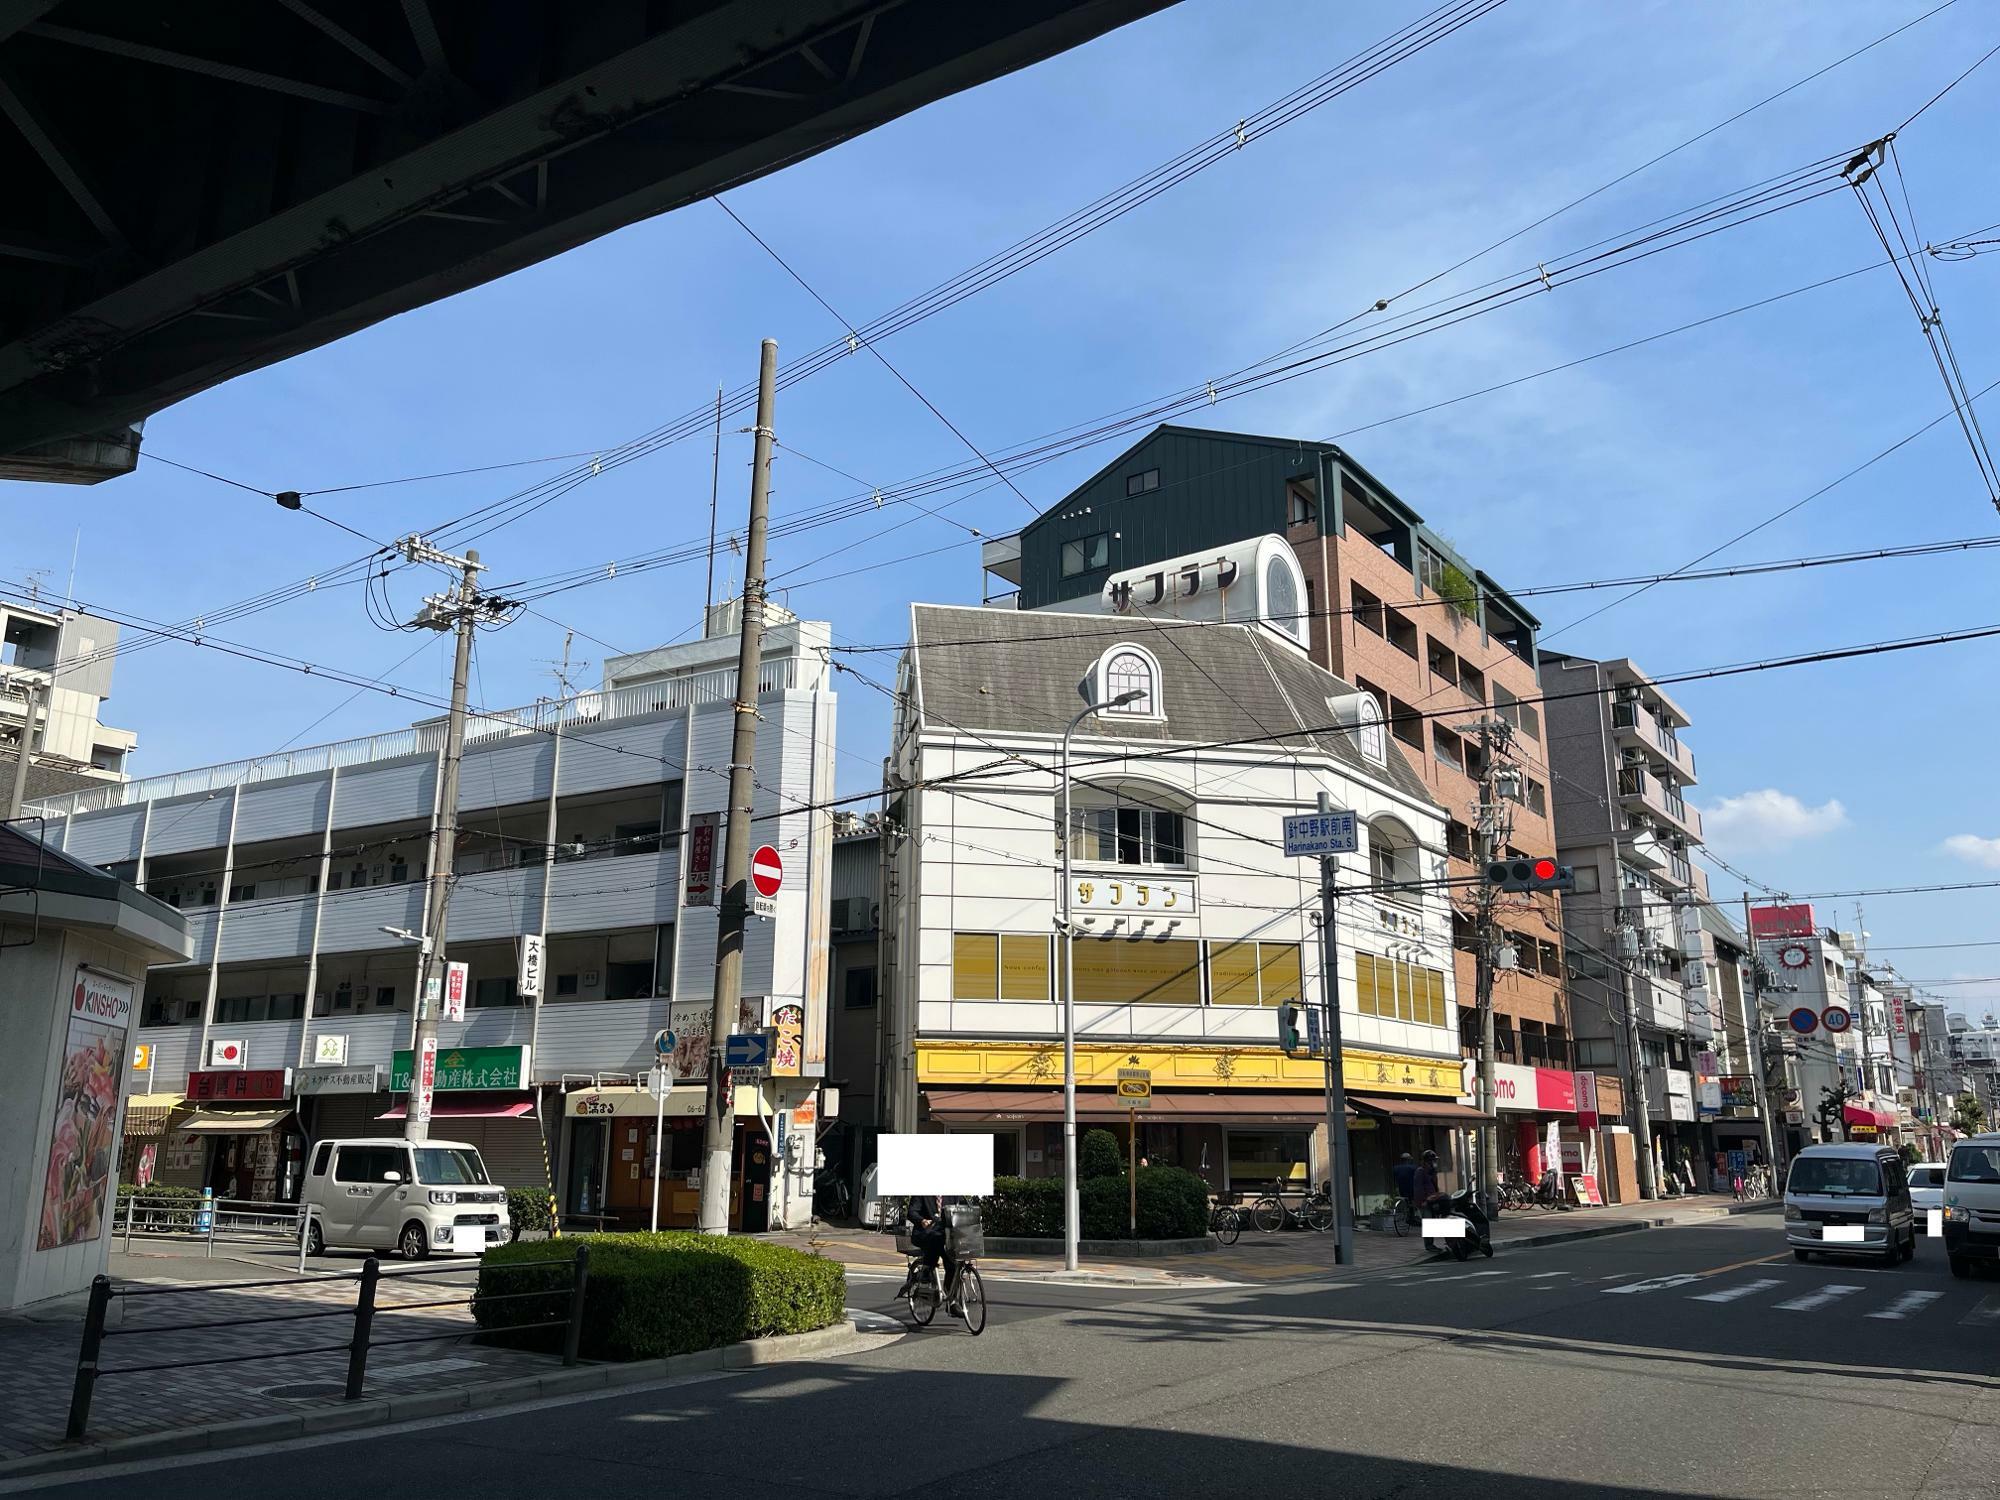 針中野駅の南側の写真。洋菓子のお店「サフラン」などが写っています